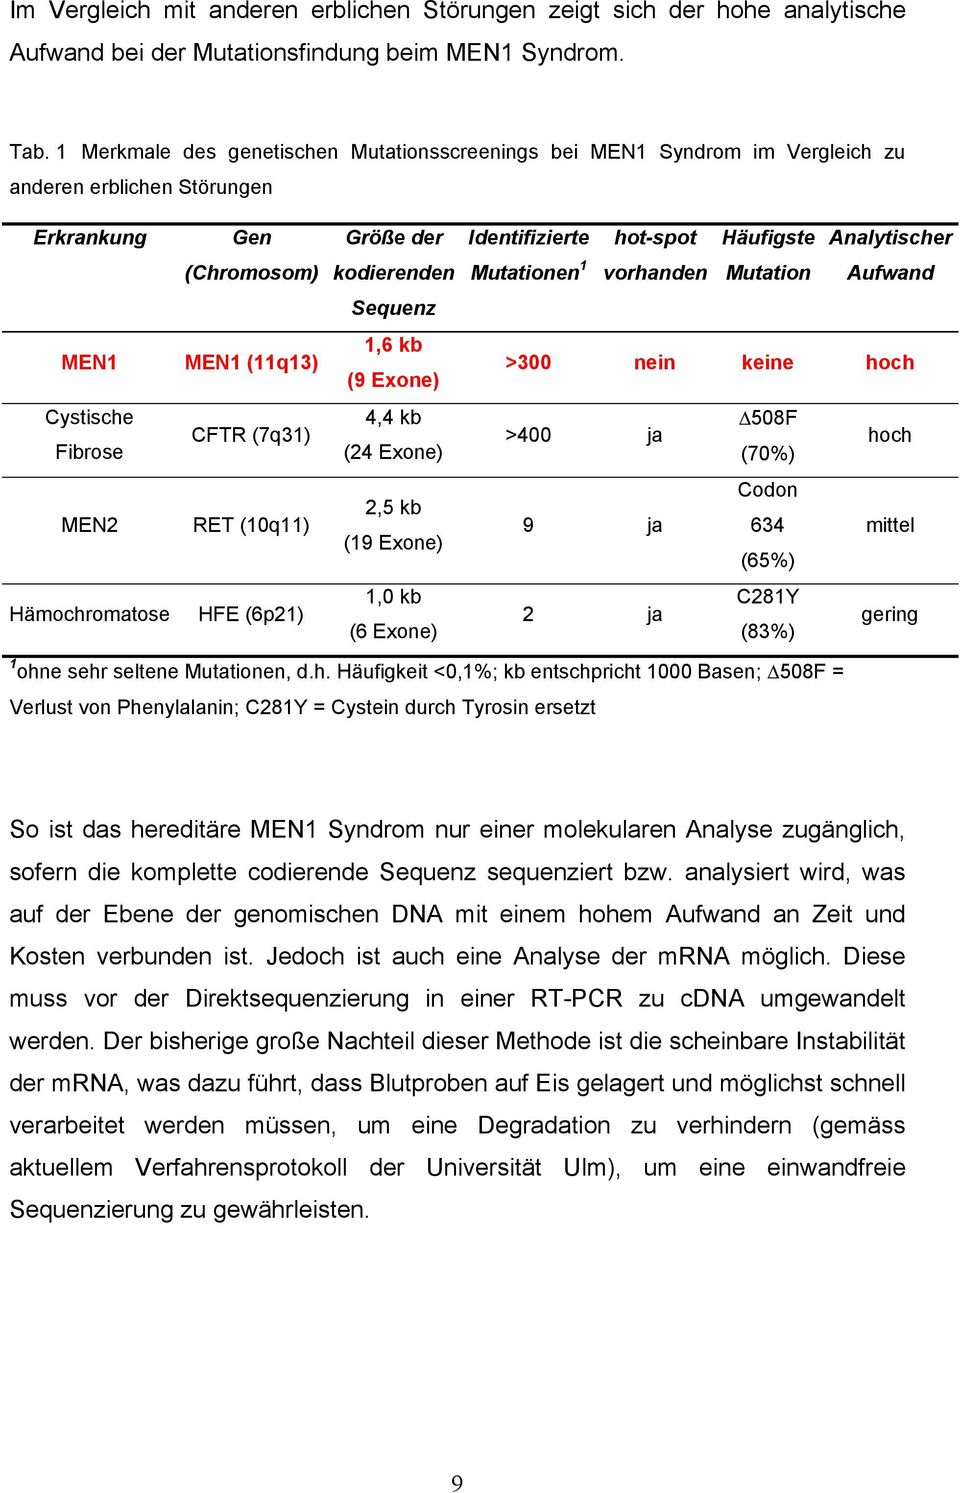 kodierenden Mutationen 1 vorhanden Mutation Aufwand Sequenz MEN1 MEN1 (11q13) 1,6 kb (9 Exone) >300 nein keine hoch Cystische Fibrose CFTR (7q31) 4,4 kb (24 Exone) >400 ja 508F (70%) hoch MEN2 RET